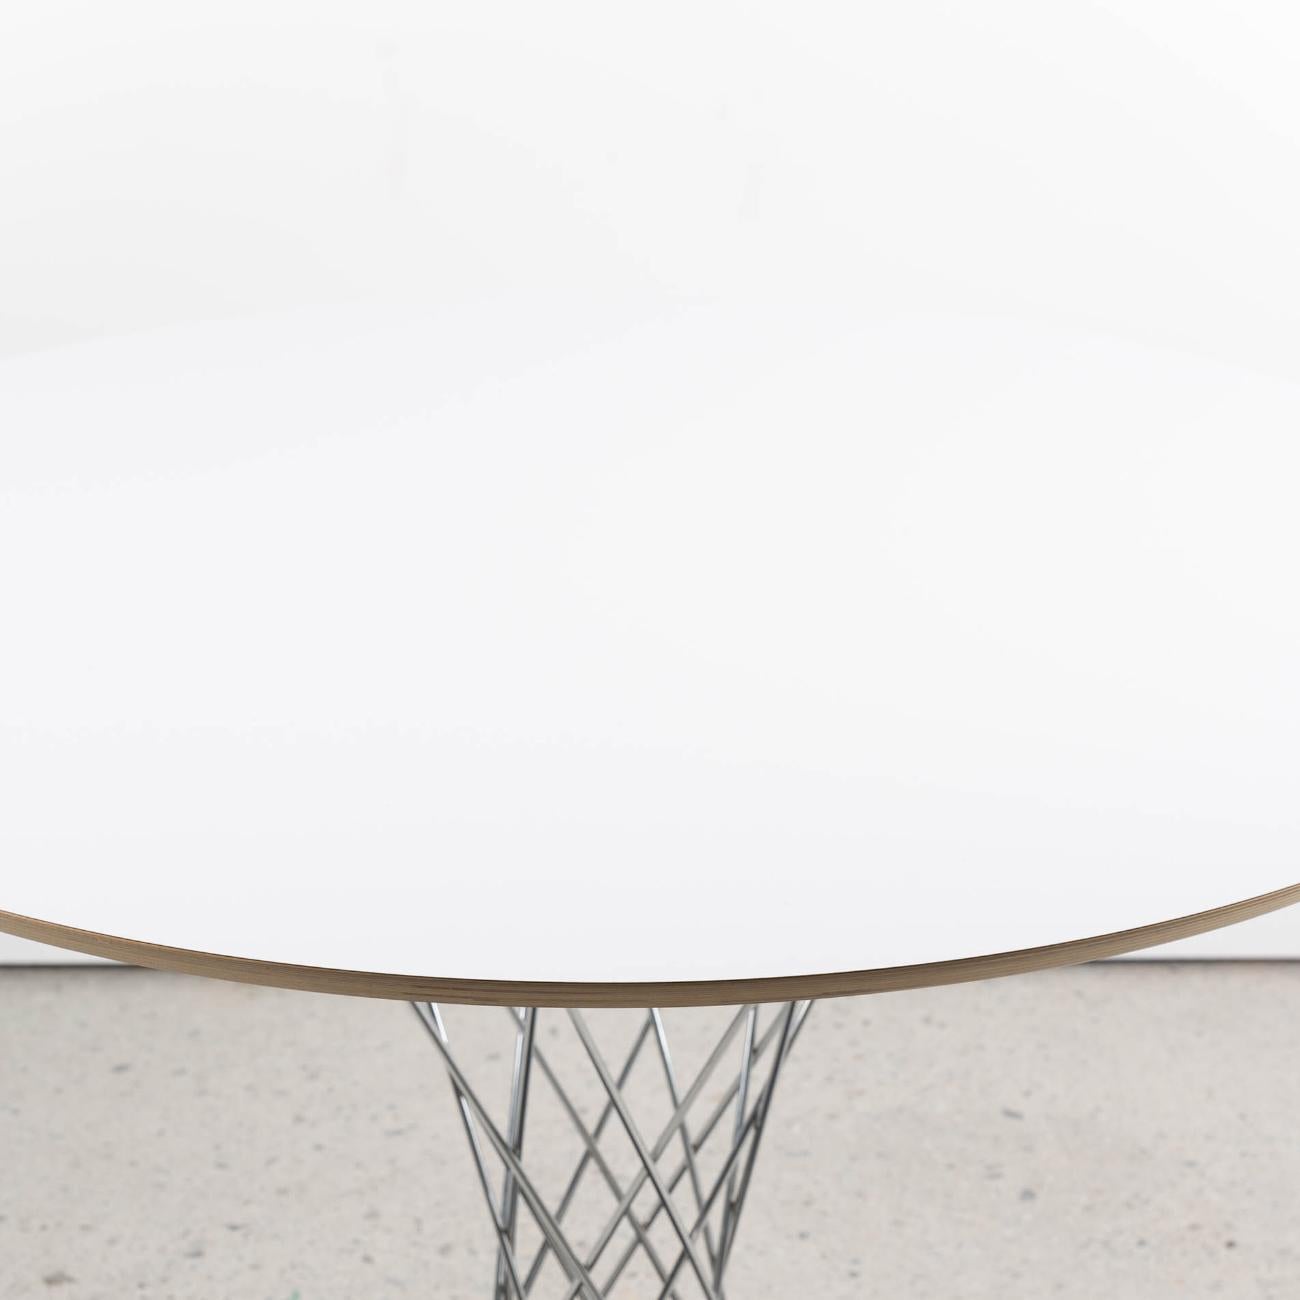 Avec sa silhouette en fil de fer et sa base en fonte noire, la table Cyclone de Noguchi a été créée à l'origine comme un tabouret ludique, puis agrandie à la taille d'une table lorsque Hans Knoll a dit à Noguchi qu'il pensait que le design serait un